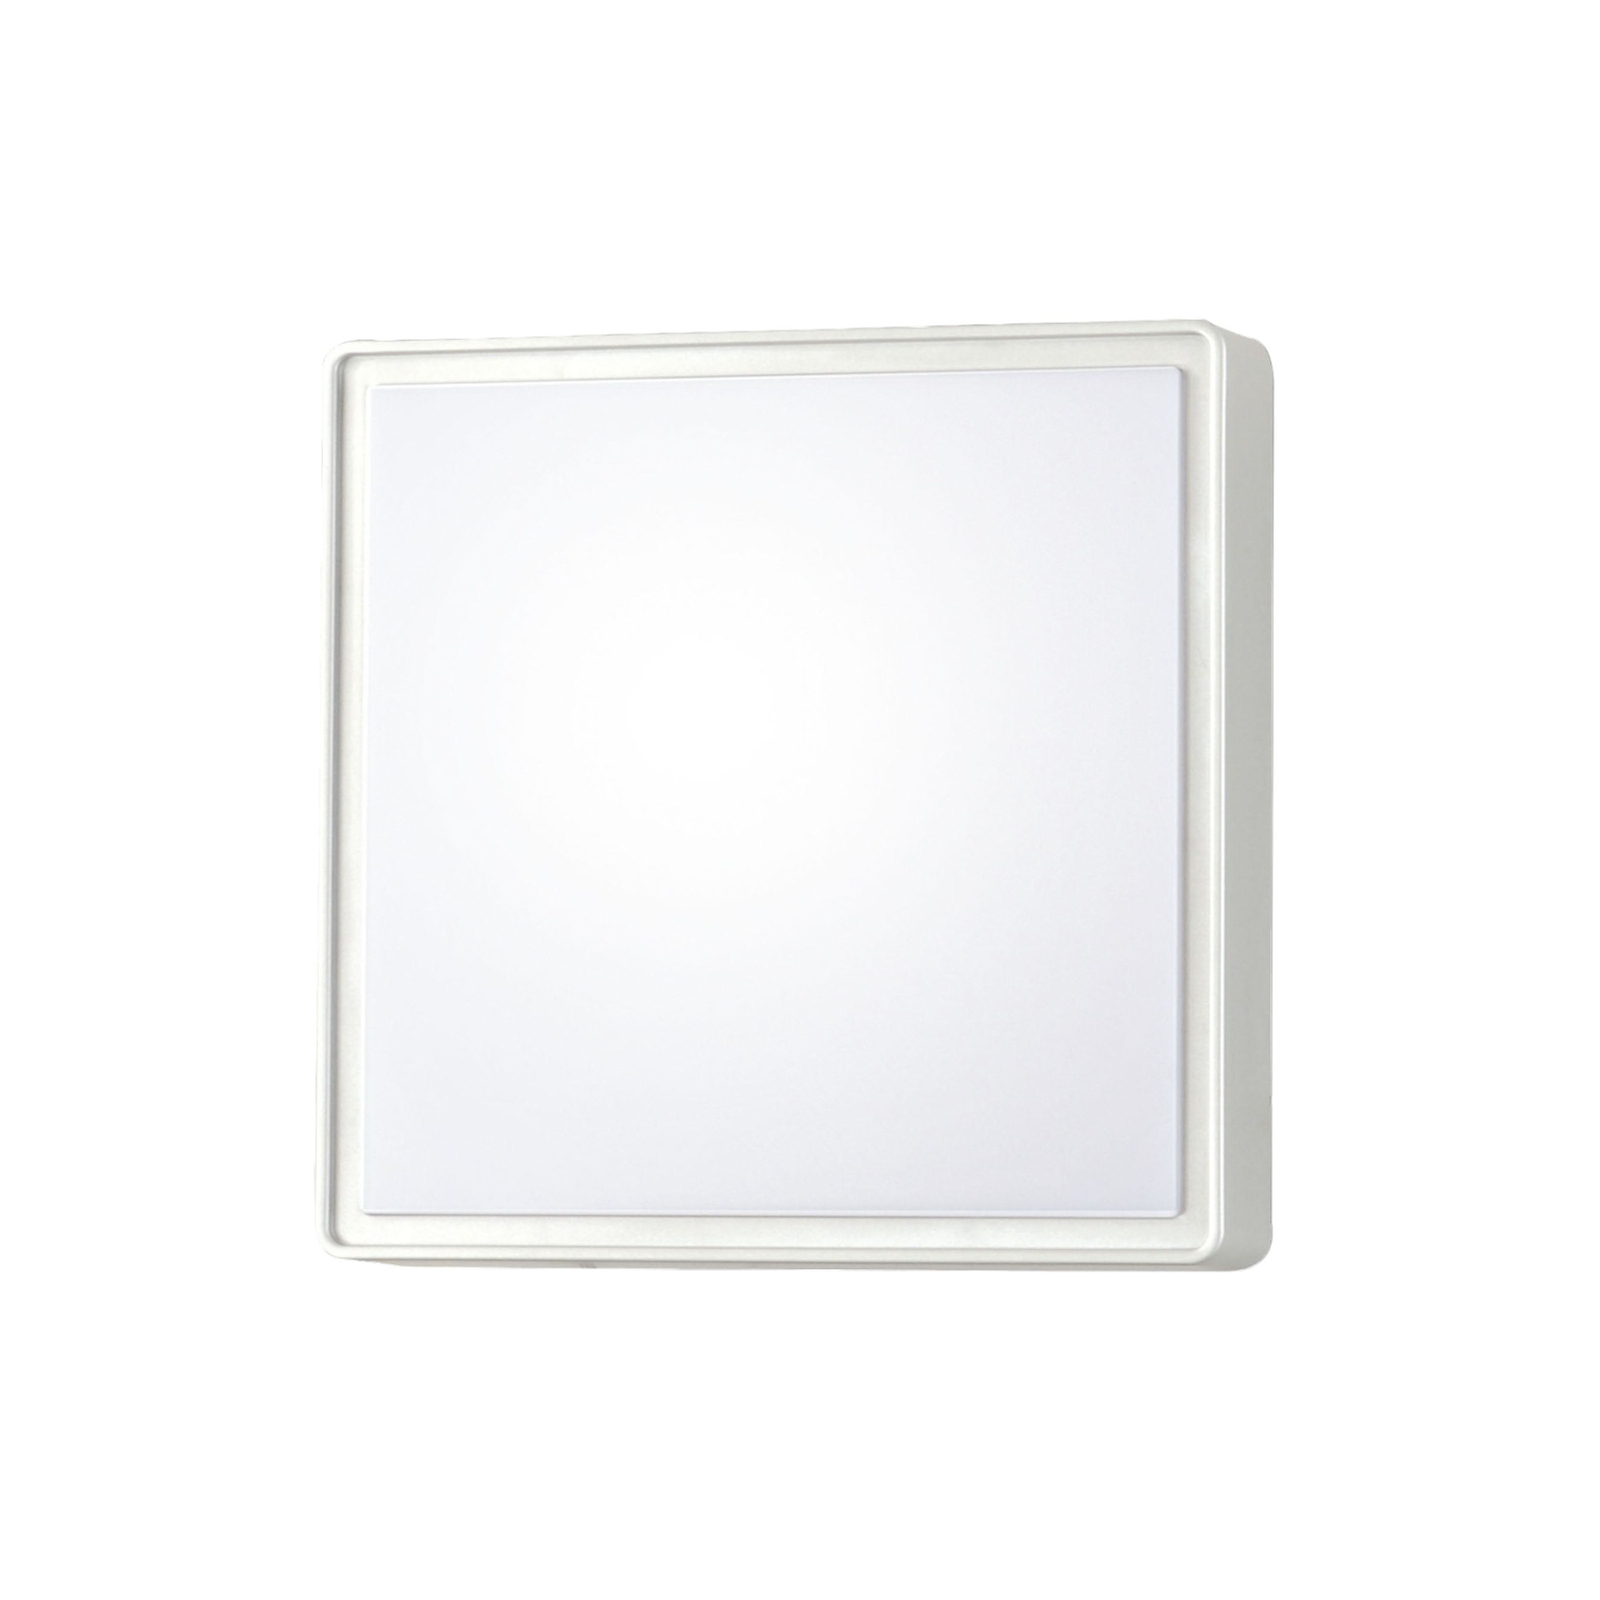 Oban LED-seinävalaisin, 30 cm x 30 cm, valkoinen, IP65